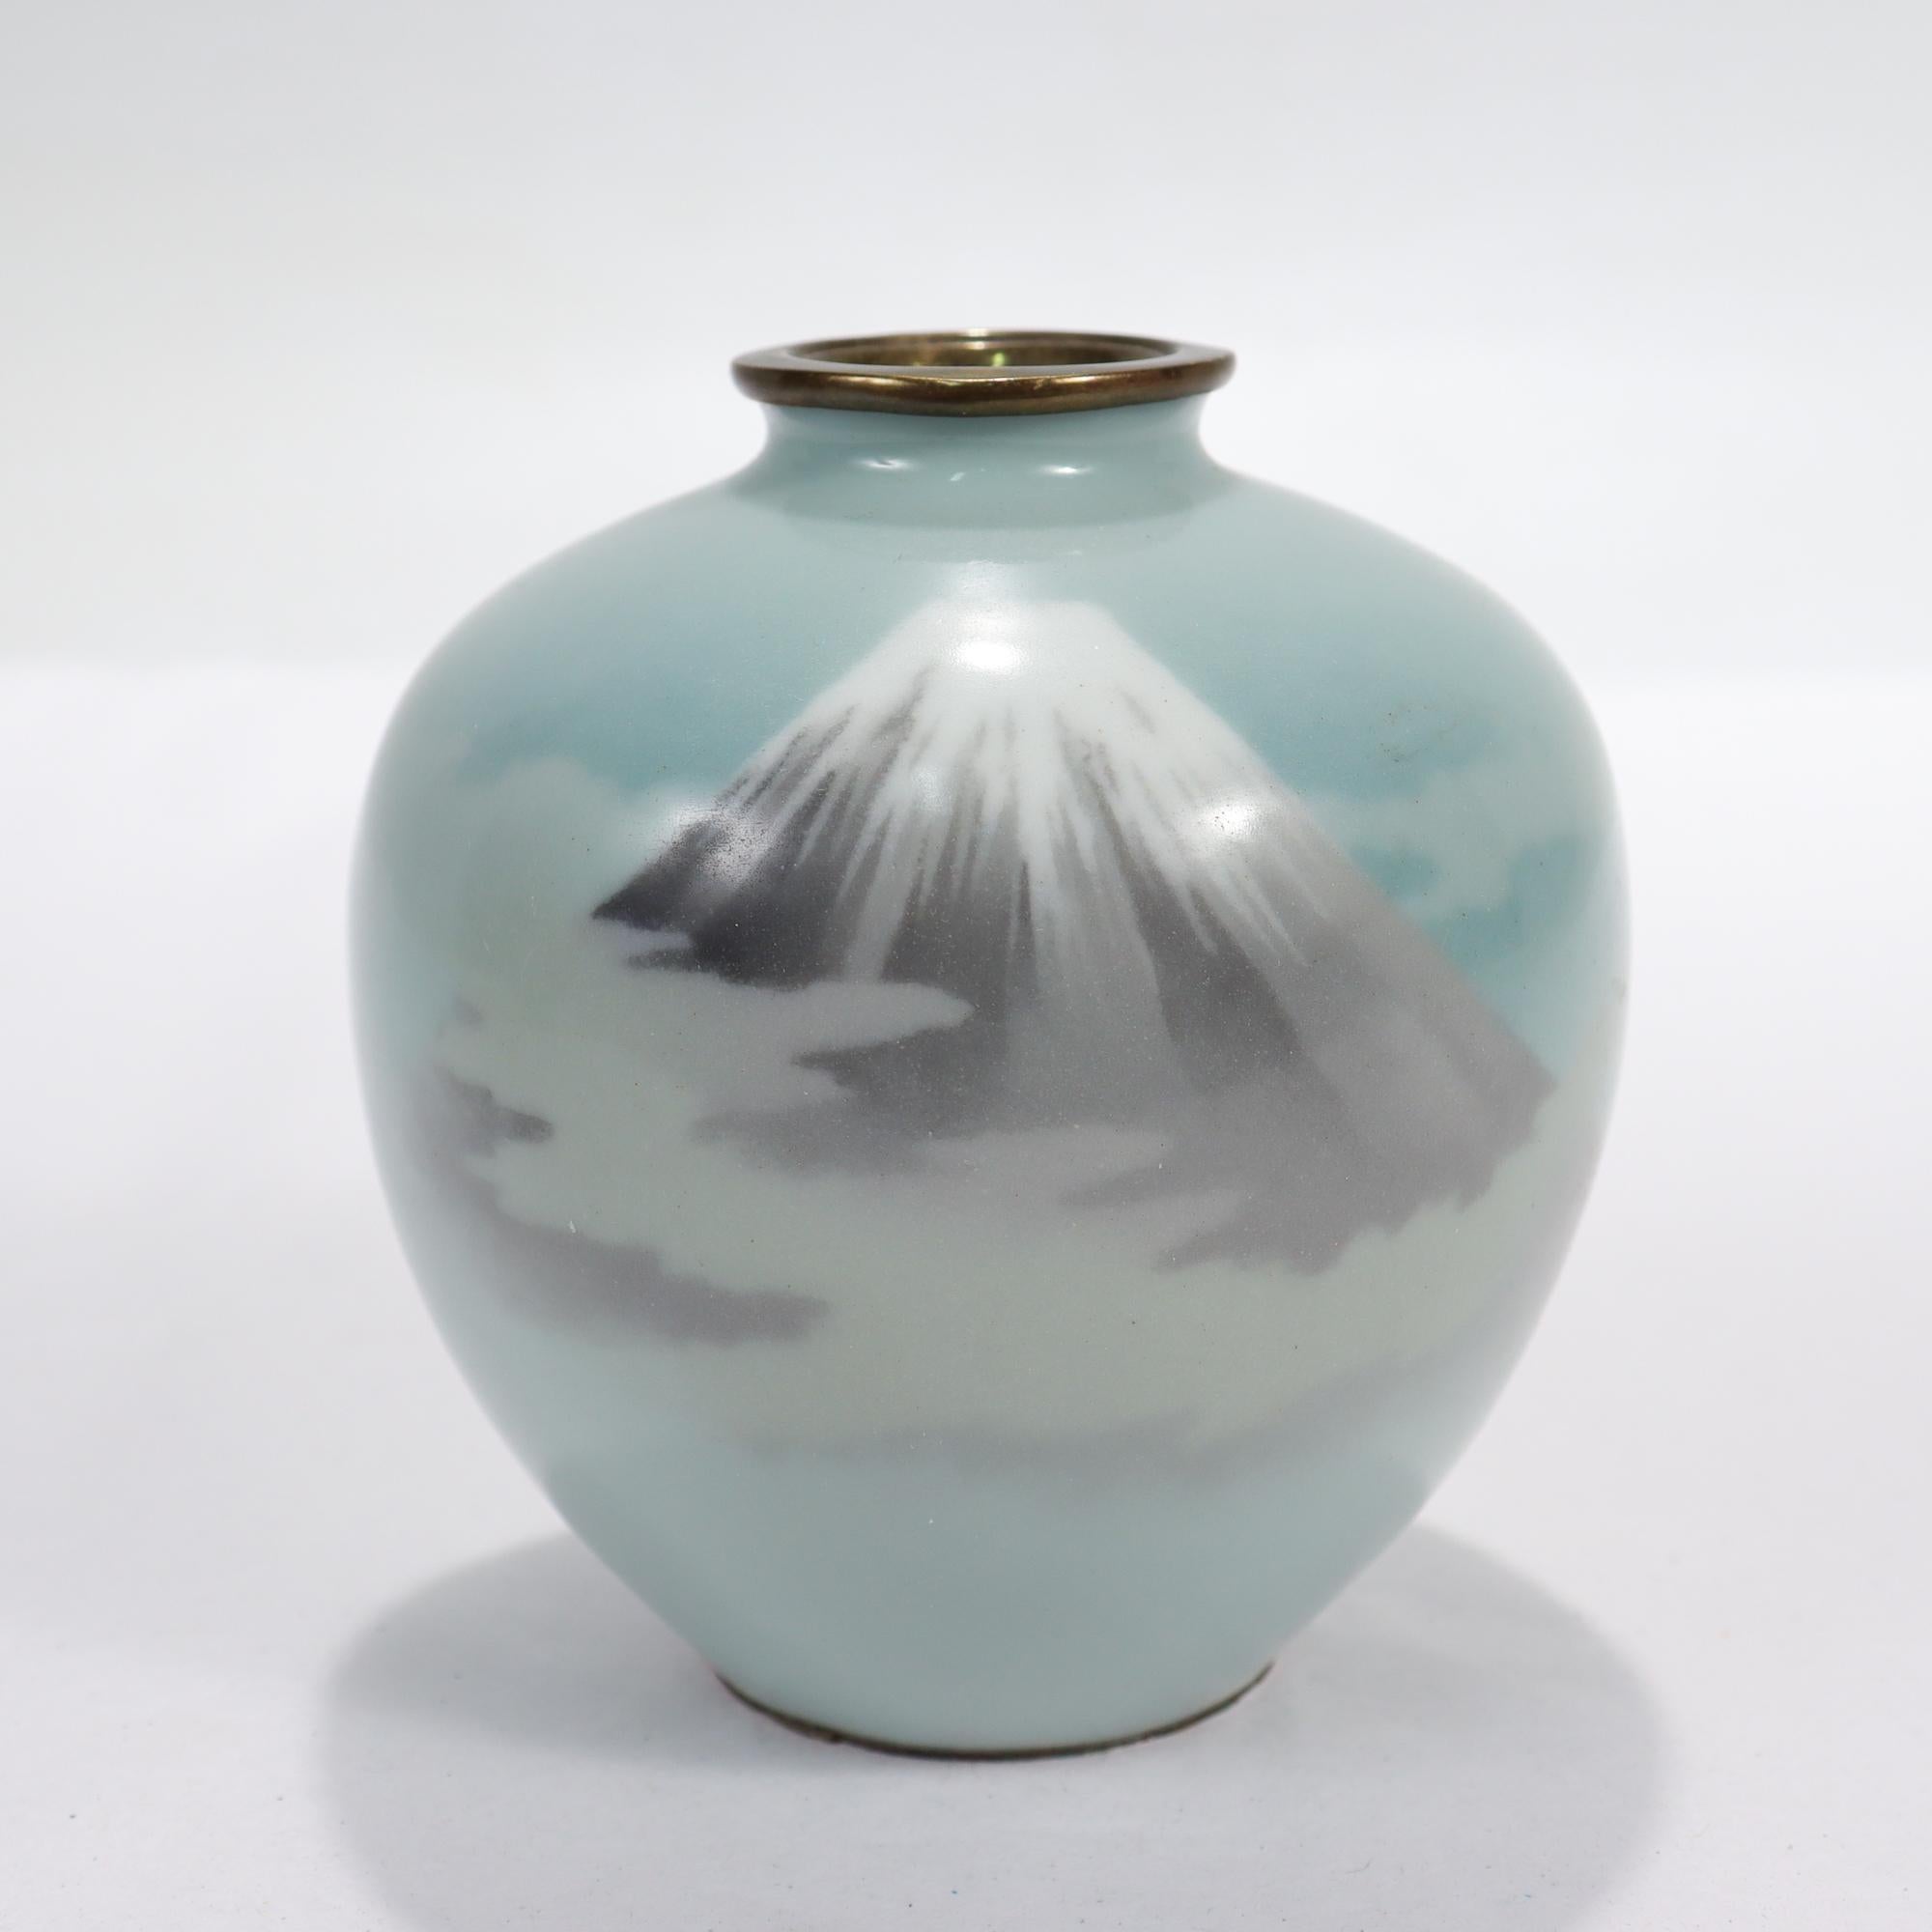 Un très beau vase ancien en émail cloisonné.

Avec une représentation du Mont Fuji enveloppé de nuages sur un fond bleu clair.

Tout simplement un joli petit vase japonais !

Date :
Fin du 19e ou début du 20e siècle

Condition générale :
Il est en